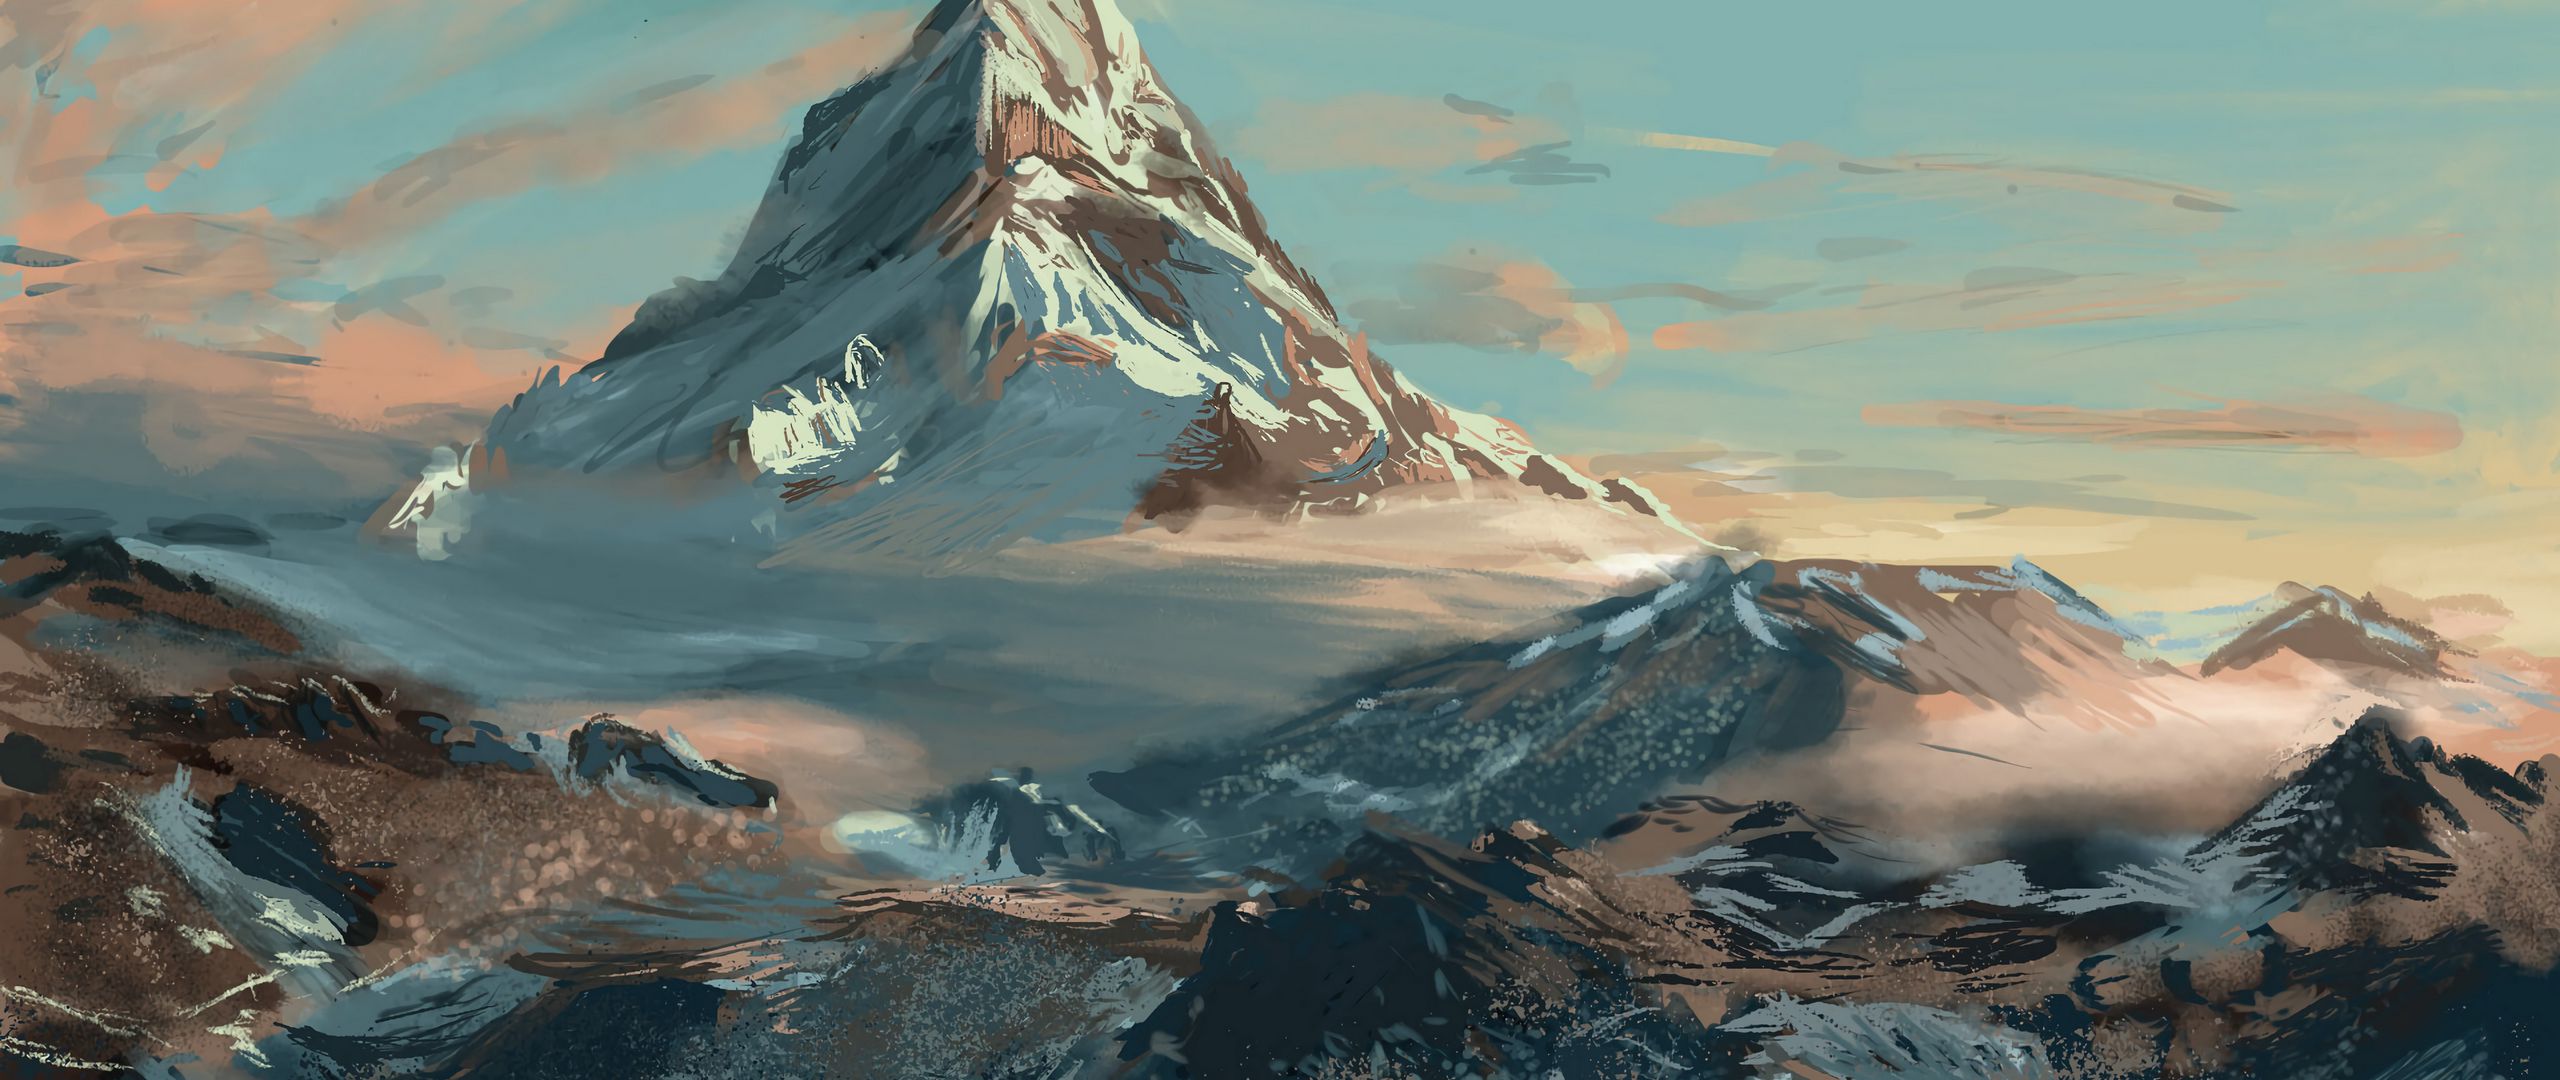 Mountain Illustration Wallpapers